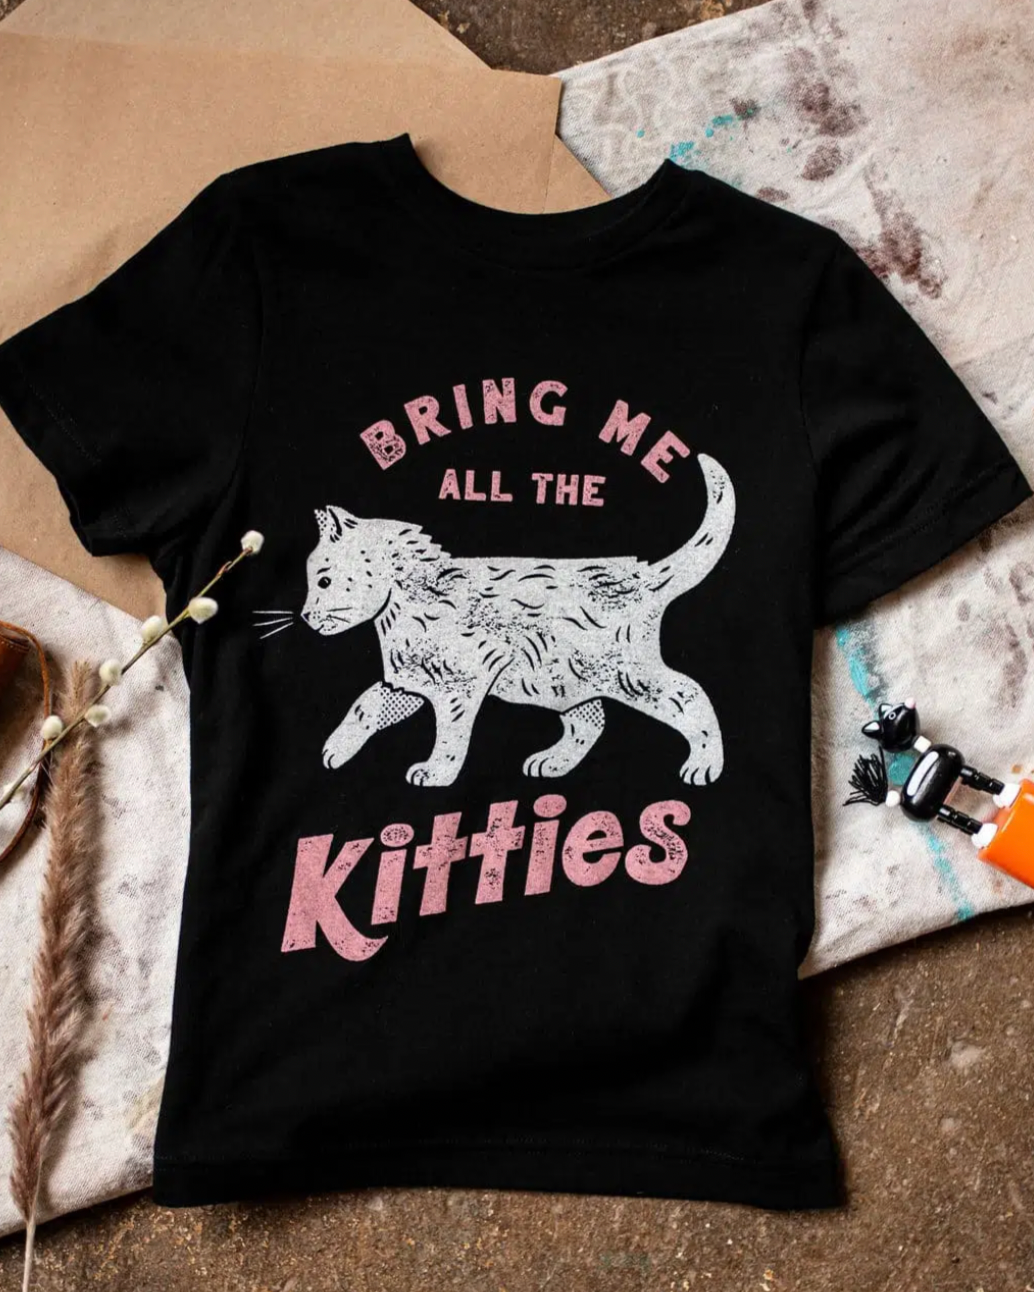 Shop Good | Bring Me Kitties Kids Tee